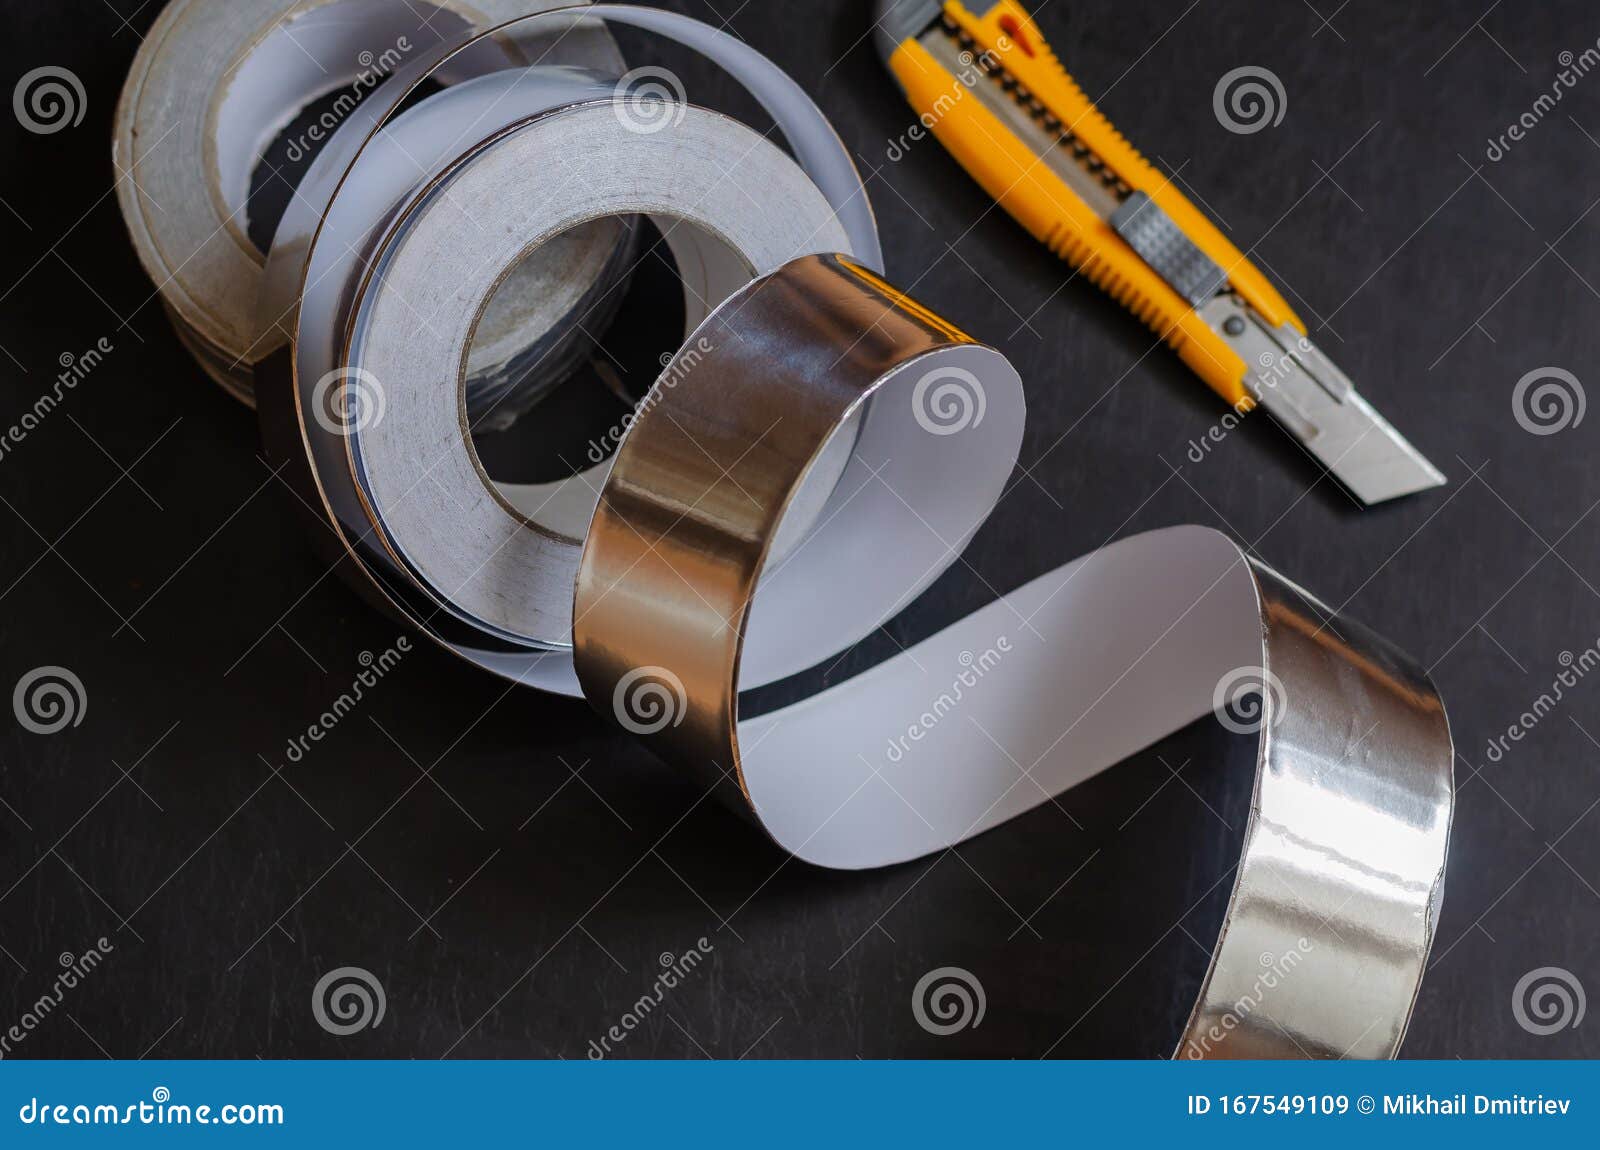 aluminum tape measure